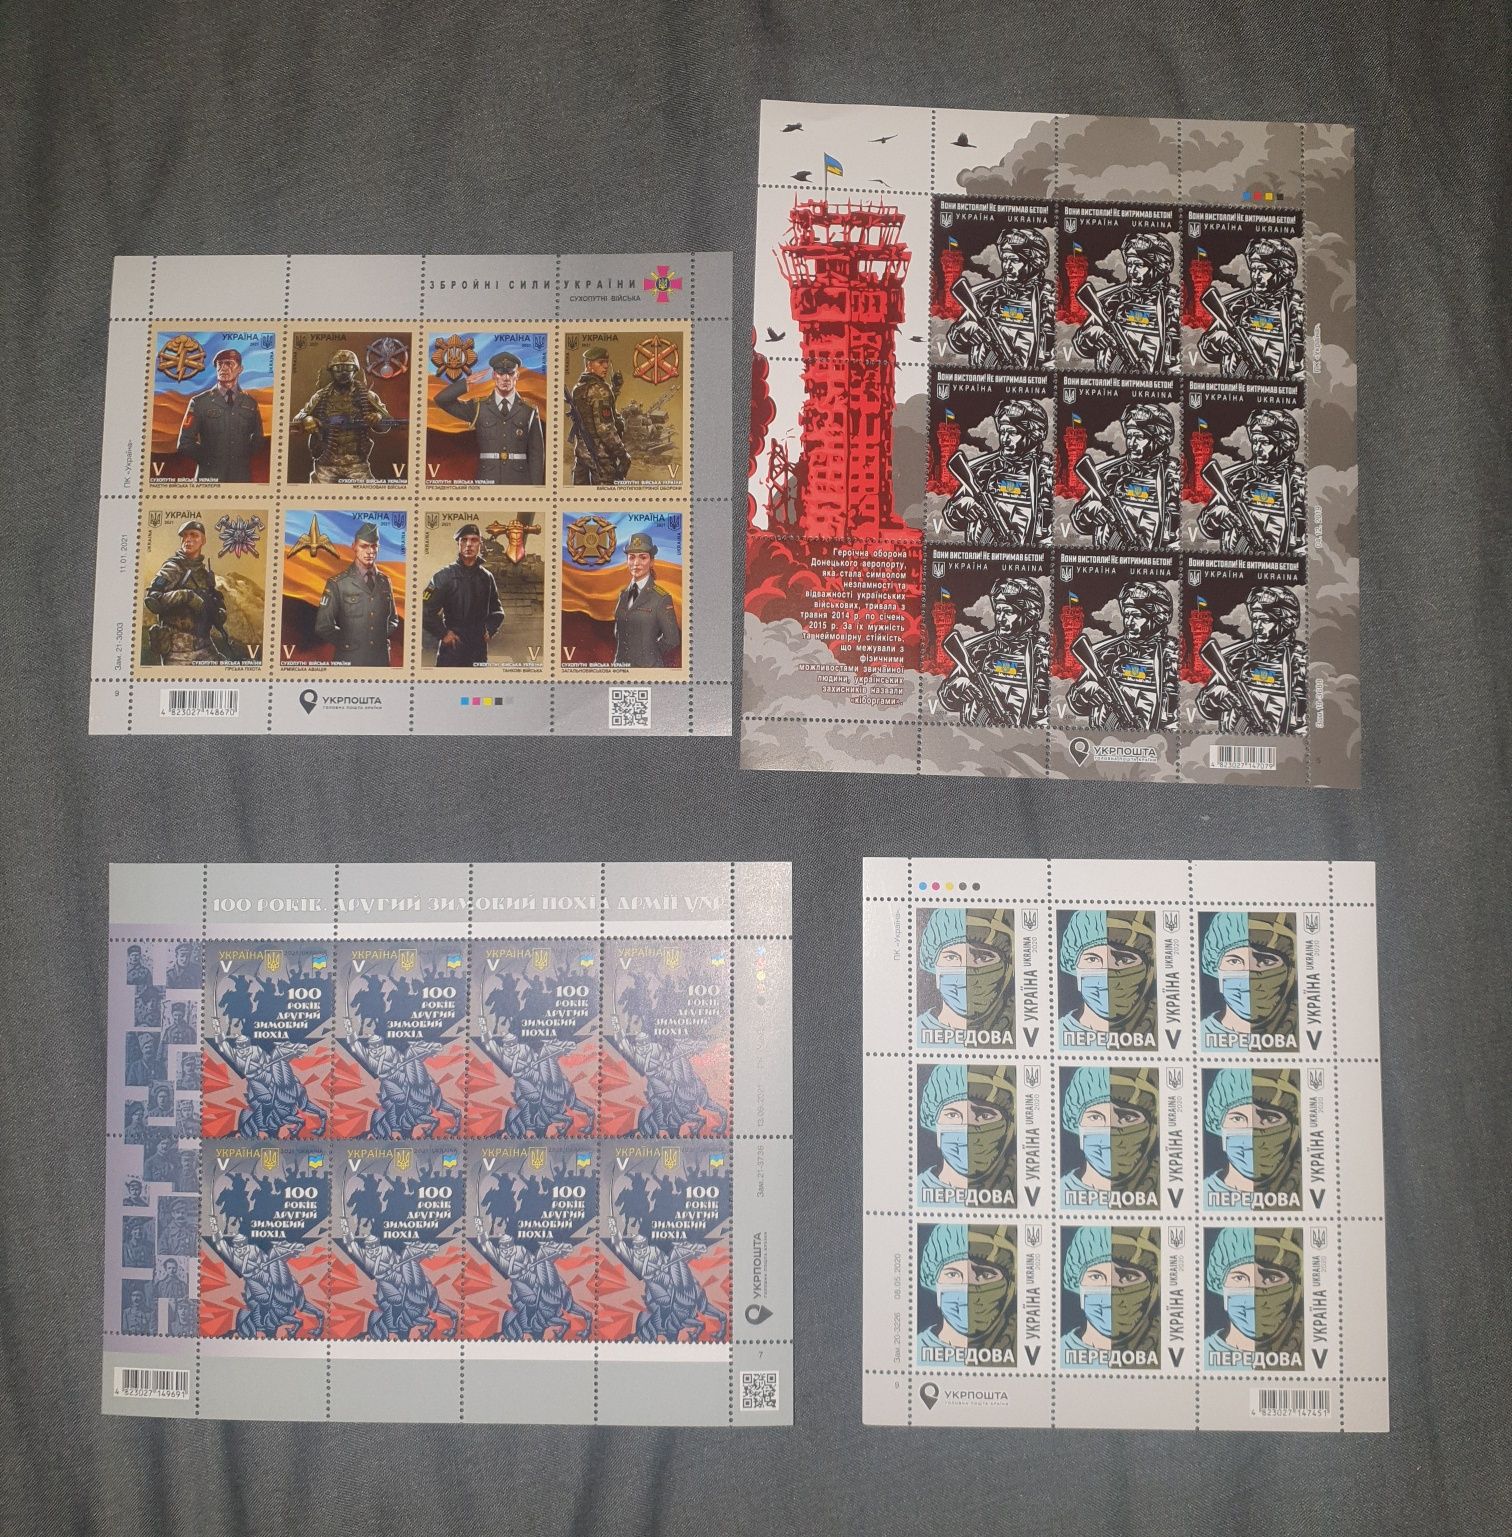 Продам колекцію марок України, всього є 112 блоків, марки Україна